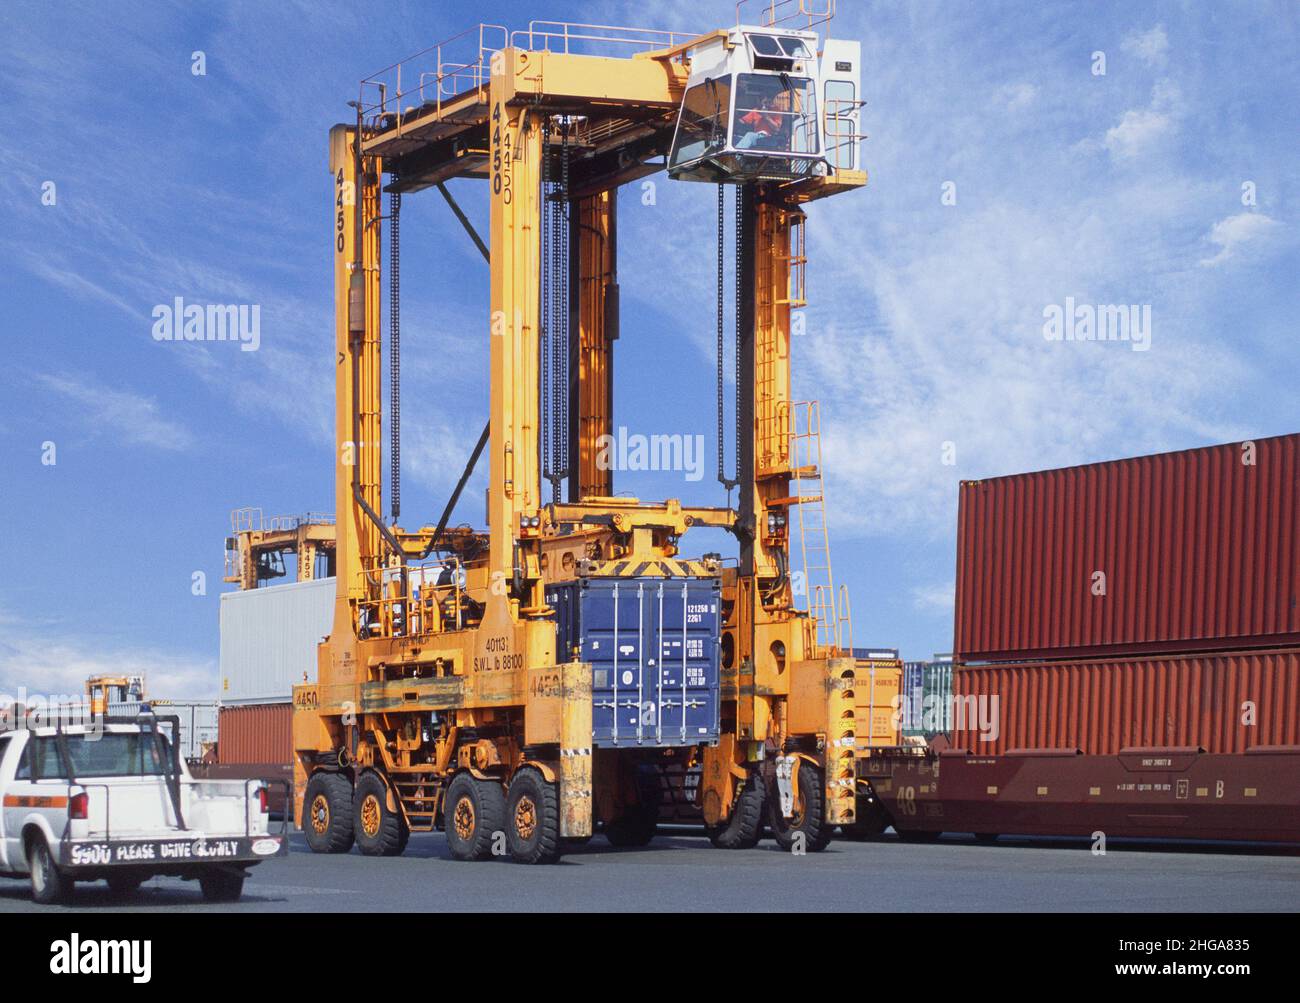 Frachtcontainer am Hafenpier. Fracht wird geladen. Versand. Gewerblicher Seehafen am Hafen. Moving Containers Infrastructure USA Stockfoto